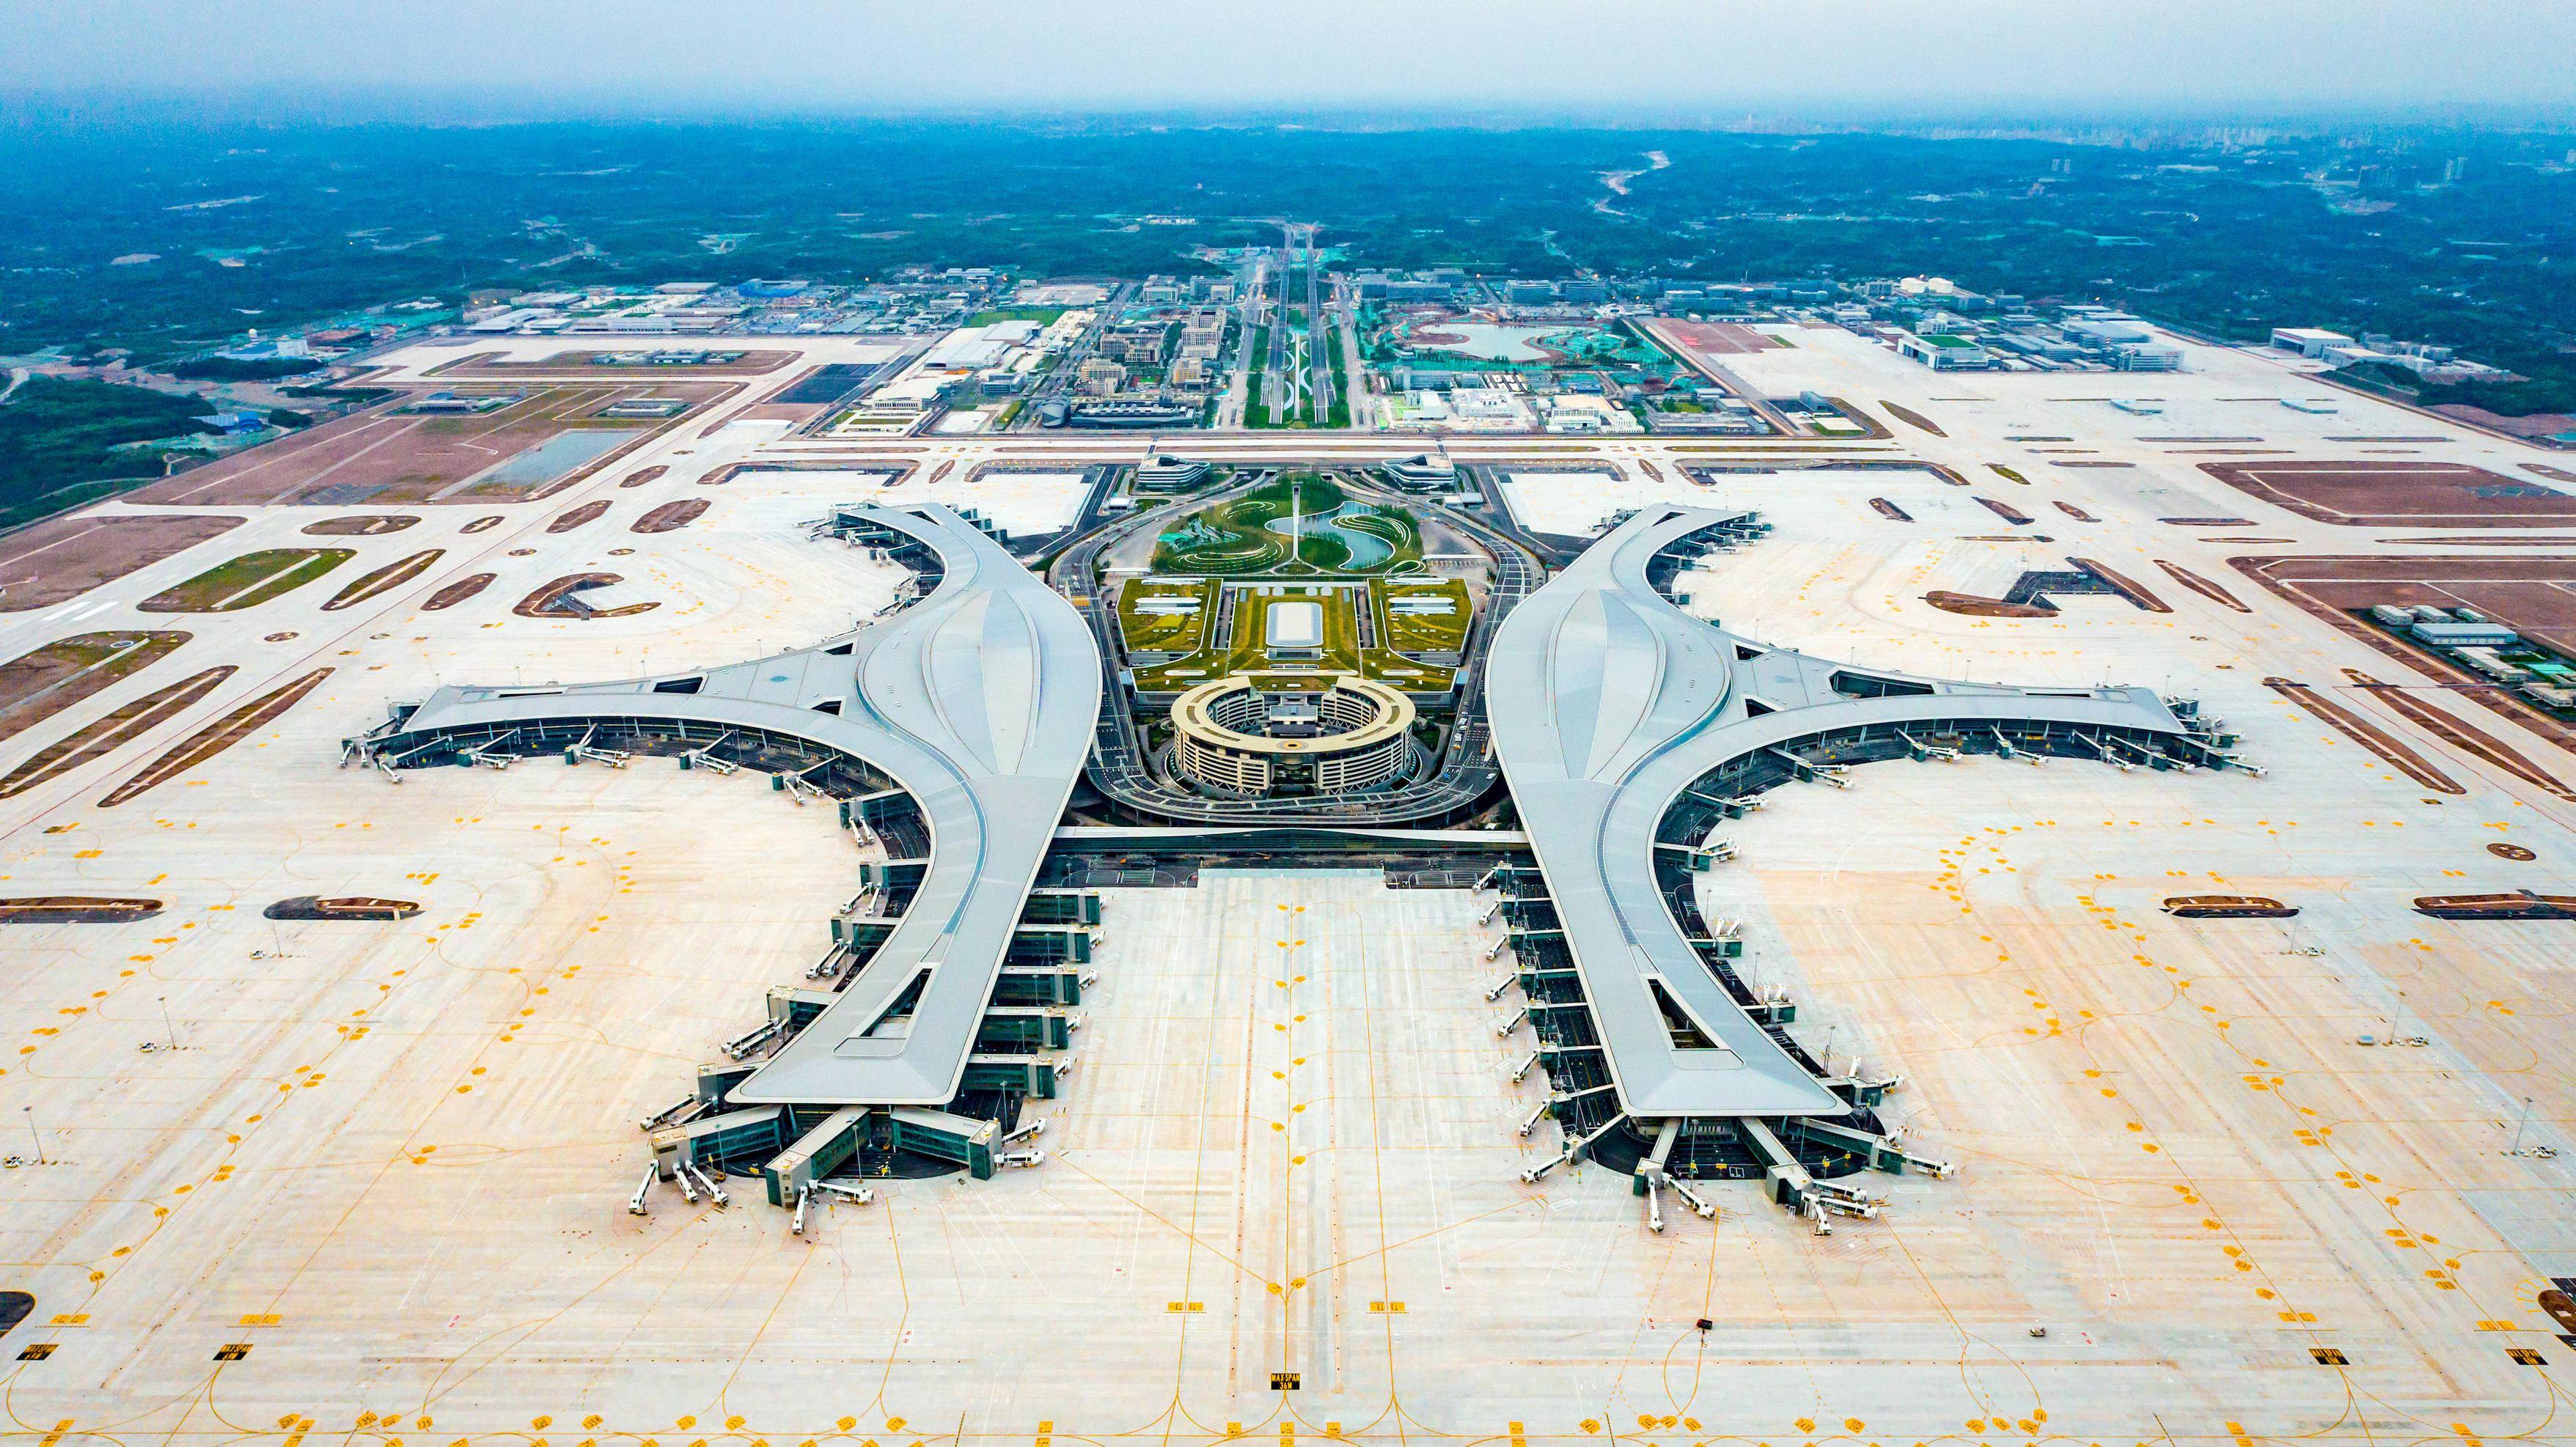 天府国际机场照片图片